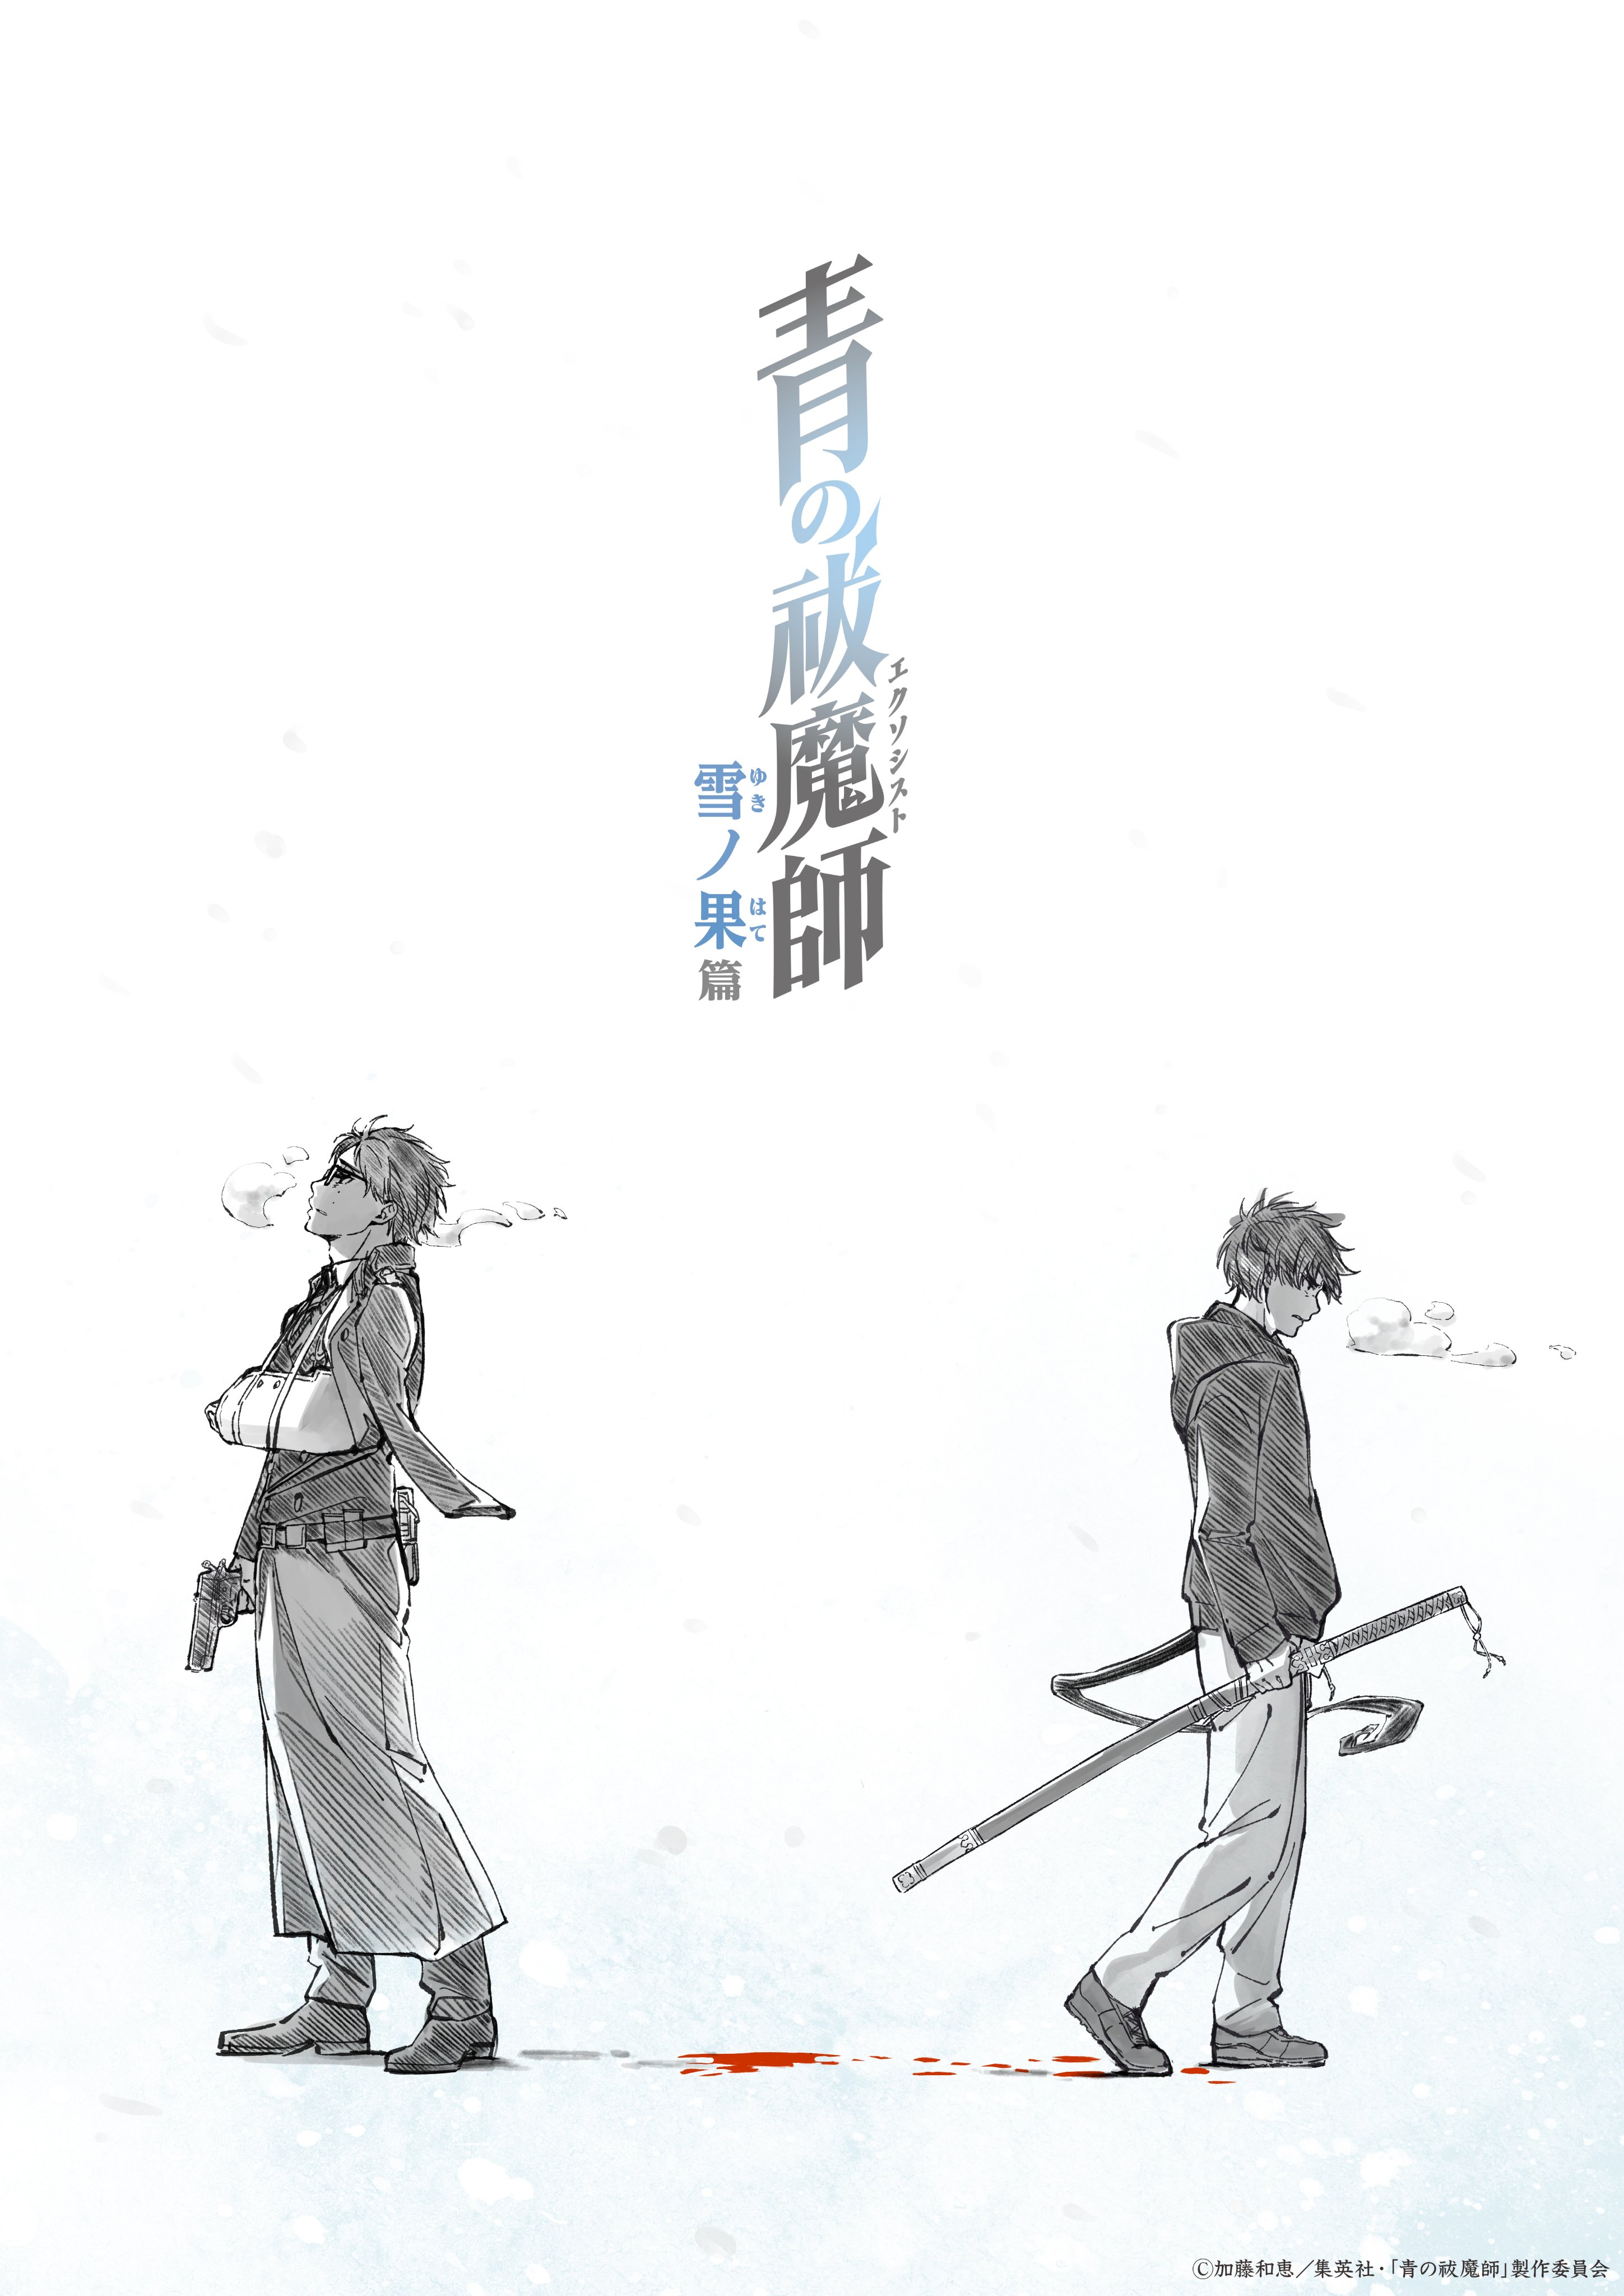 Ao no Exorcist: Yuki no Hate-hen طارد الأرواح الأزرق: في نهاية فصل الثلج